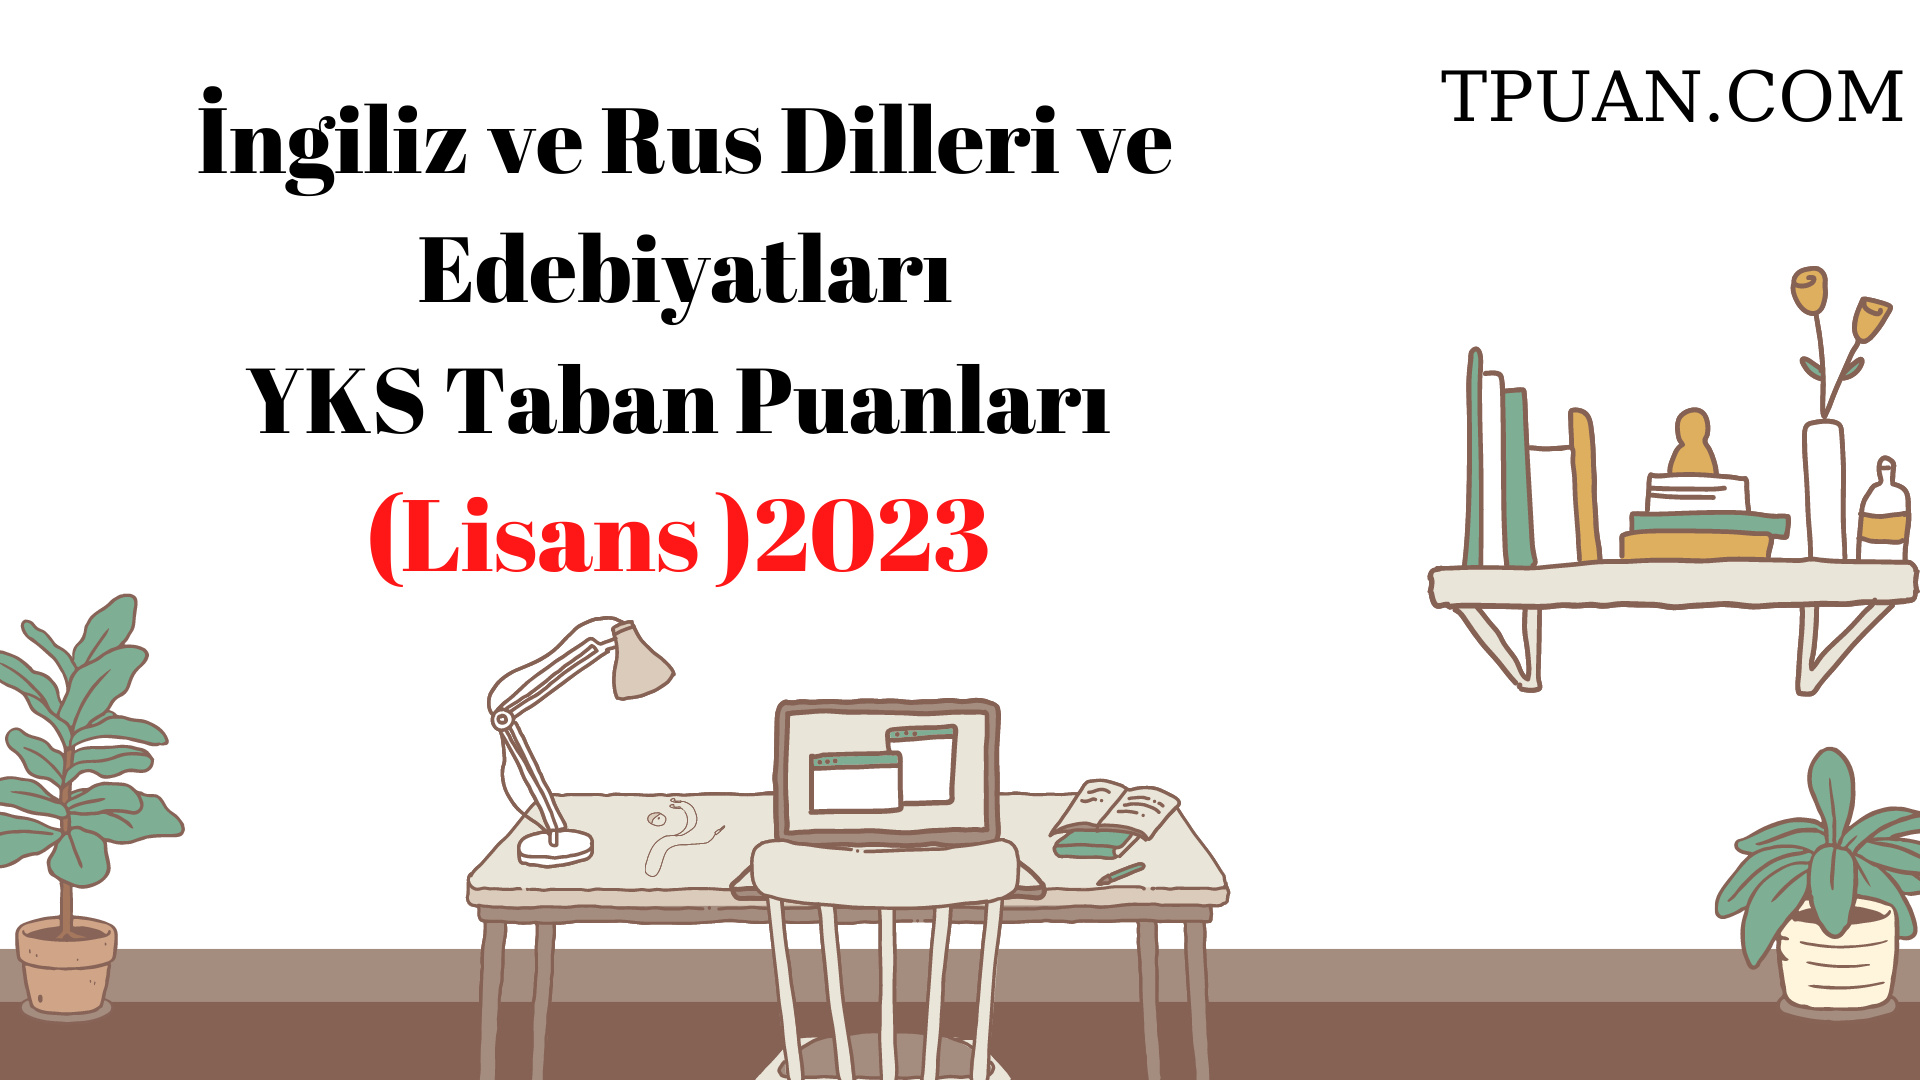  İngiliz ve Rus Dilleri ve Edebiyatları Bölümü YKS Taban Puanları (4 Yıllık) 2023